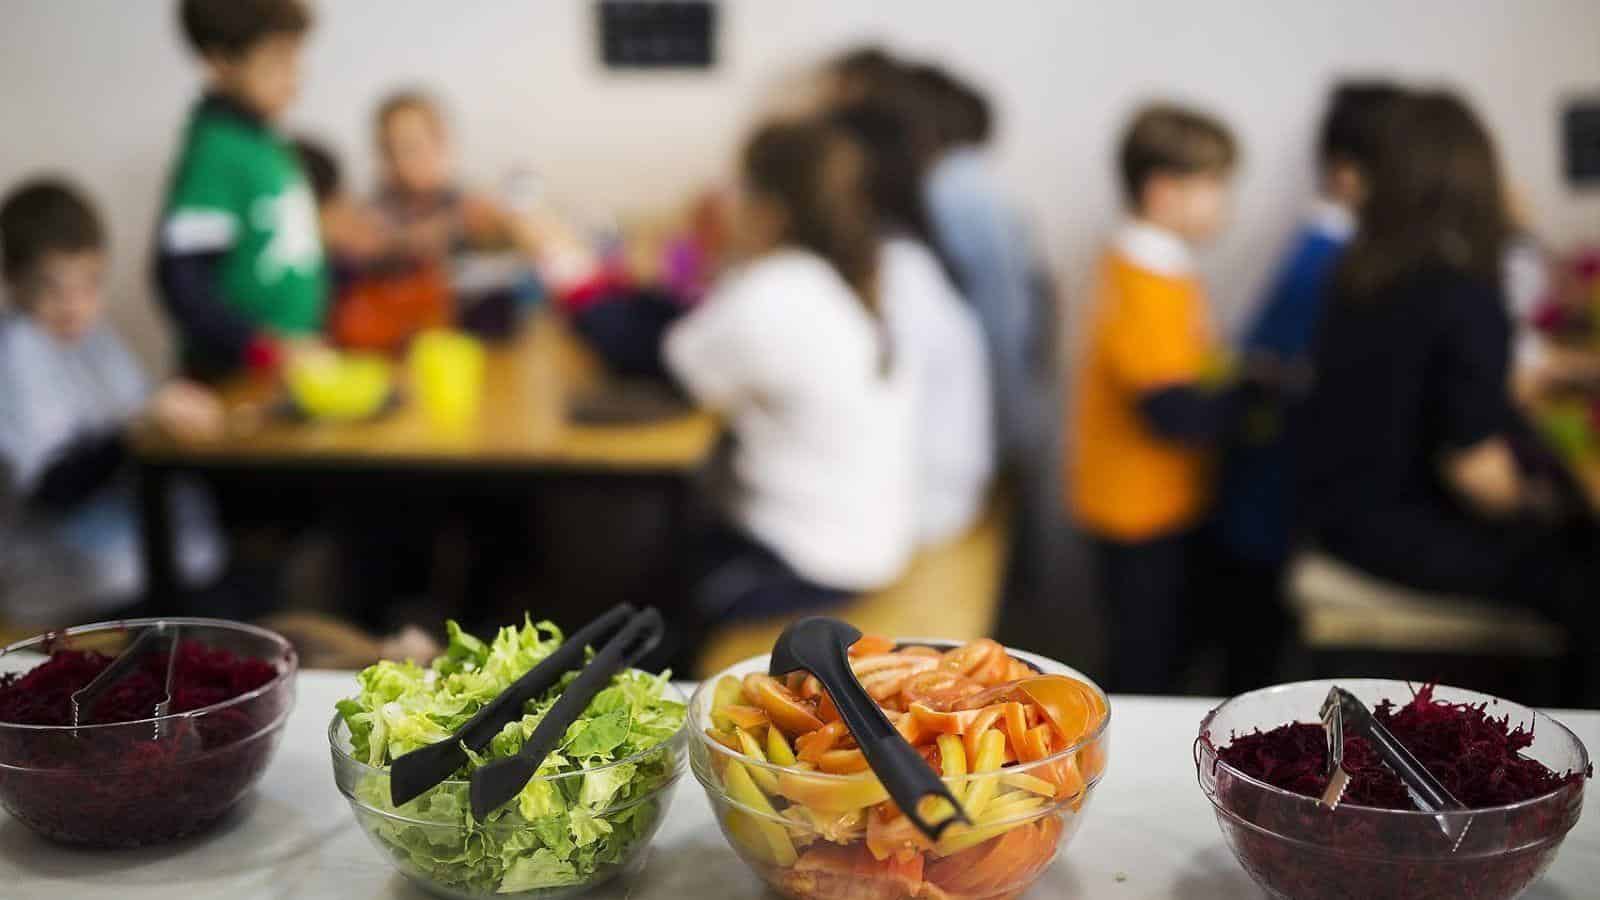 El costo en alza de los comedores escolares en Barcelona: ¿Qué implica para las familias?